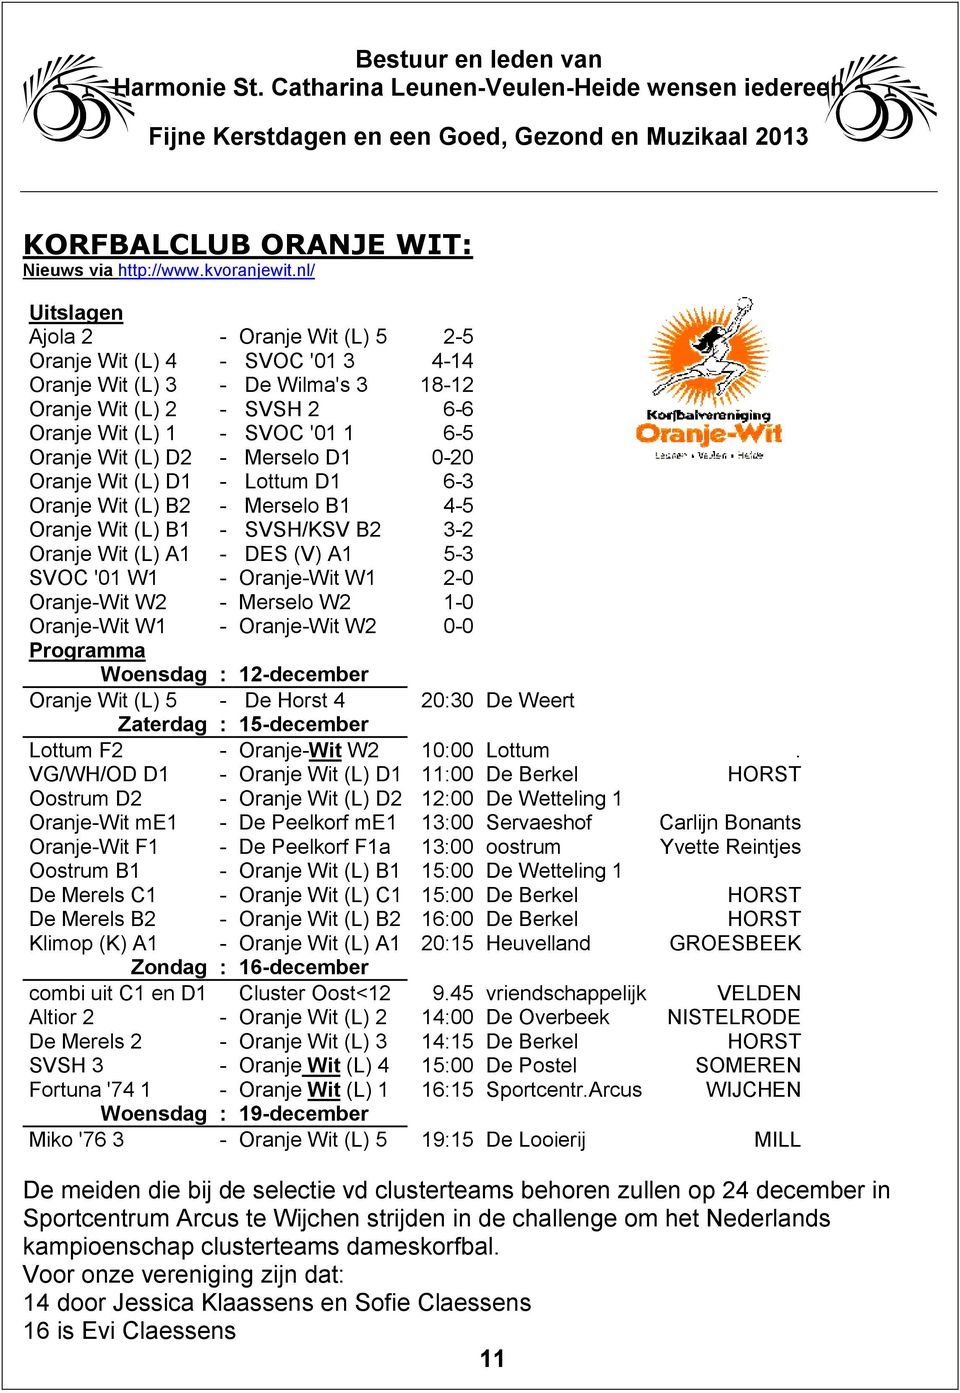 - Merselo D1 0-20 Oranje Wit (L) D1 - Lottum D1 6-3 Oranje Wit (L) B2 - Merselo B1 4-5 Oranje Wit (L) B1 - SVSH/KSV B2 3-2 Oranje Wit (L) A1 - DES (V) A1 5-3 SVOC '01 W1 - Oranje-Wit W1 2-0